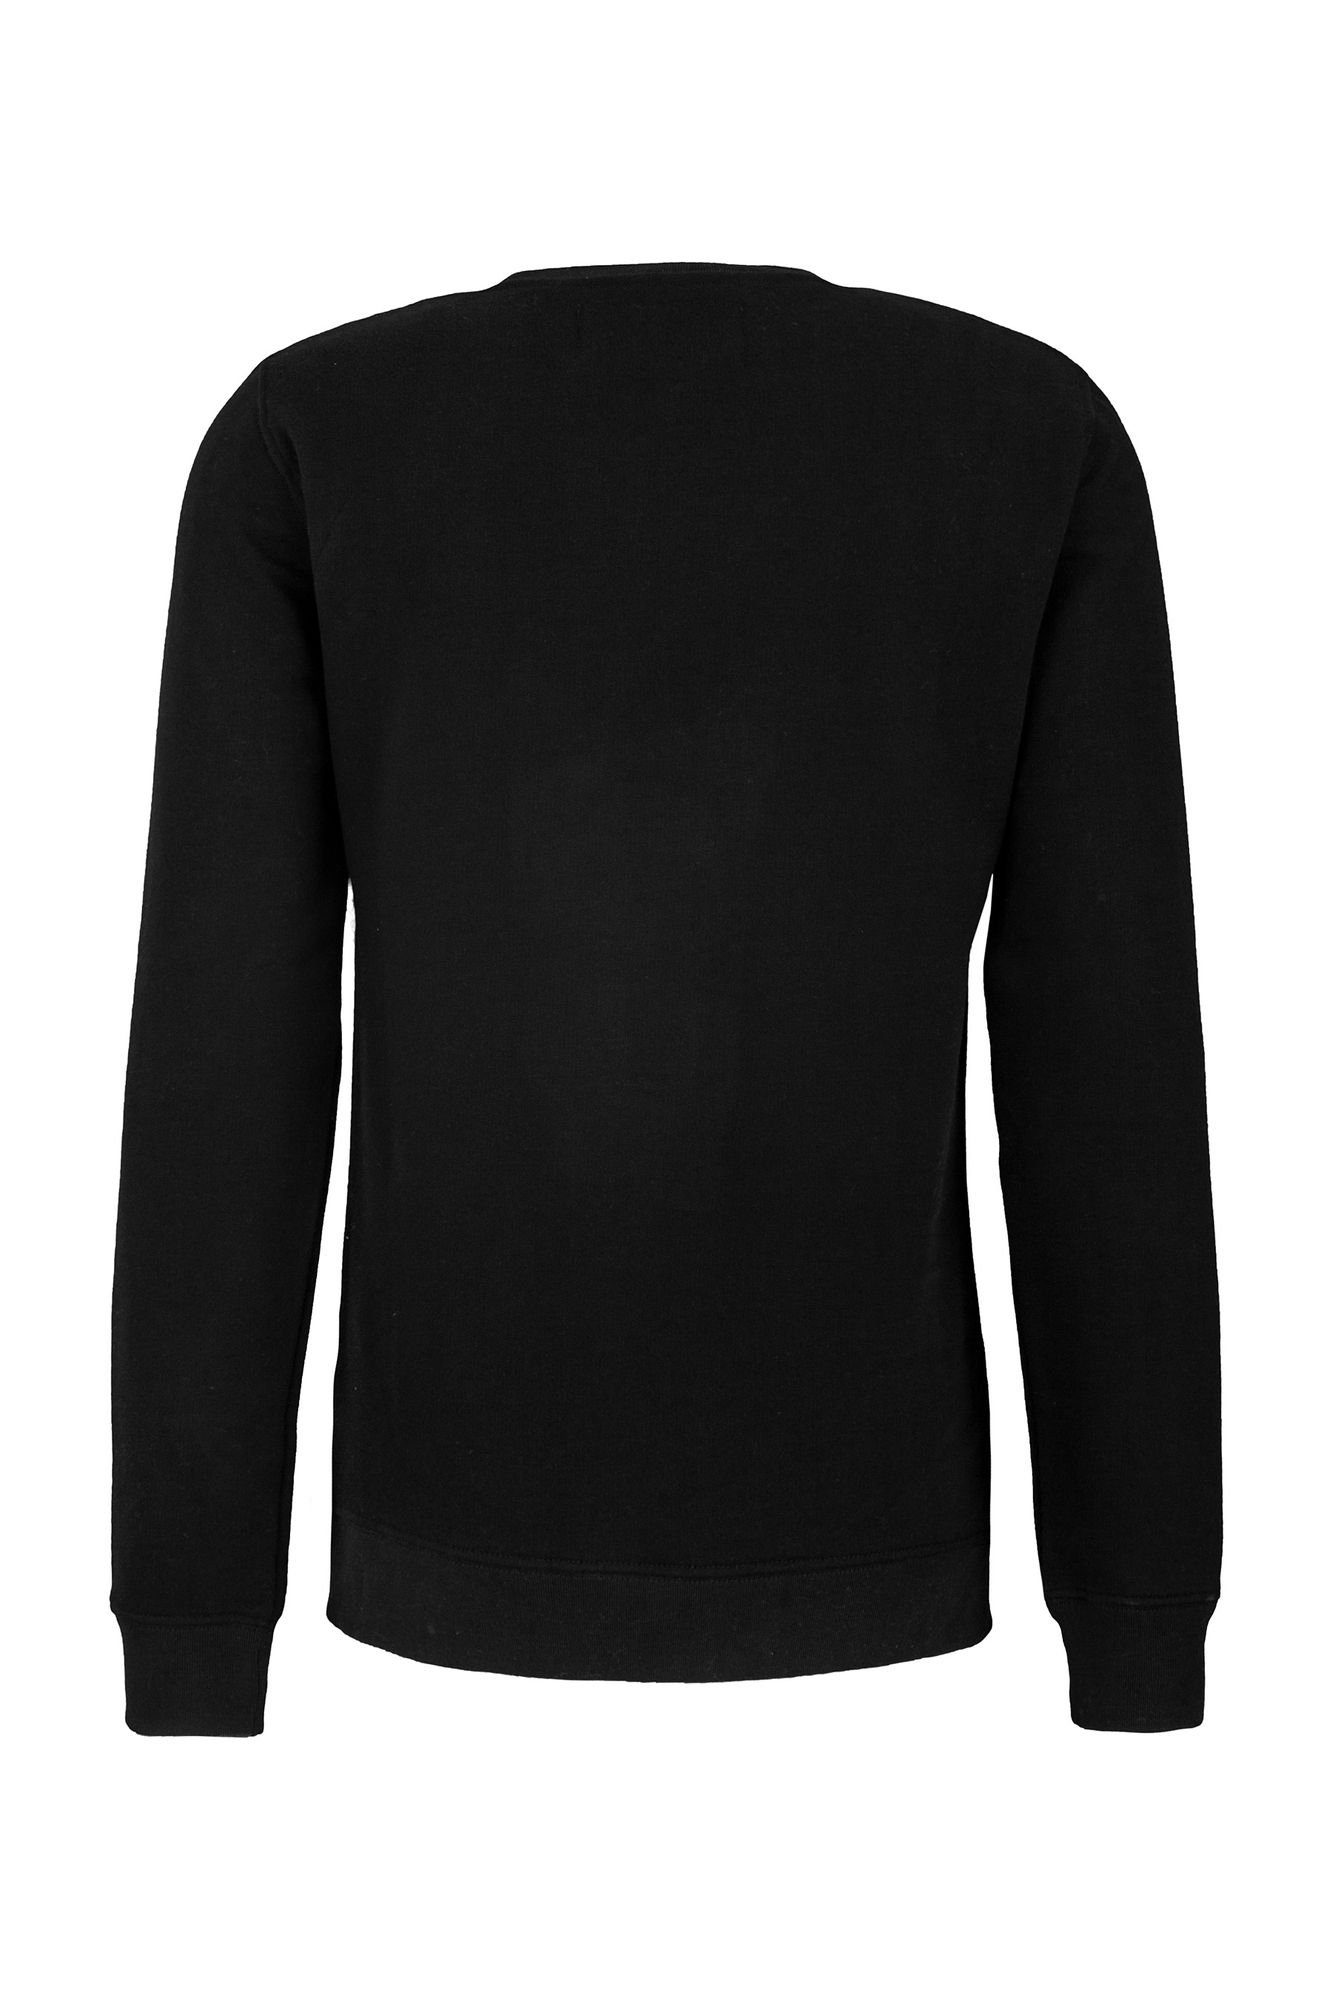 Replay Fleece Cotton Sweatshirt